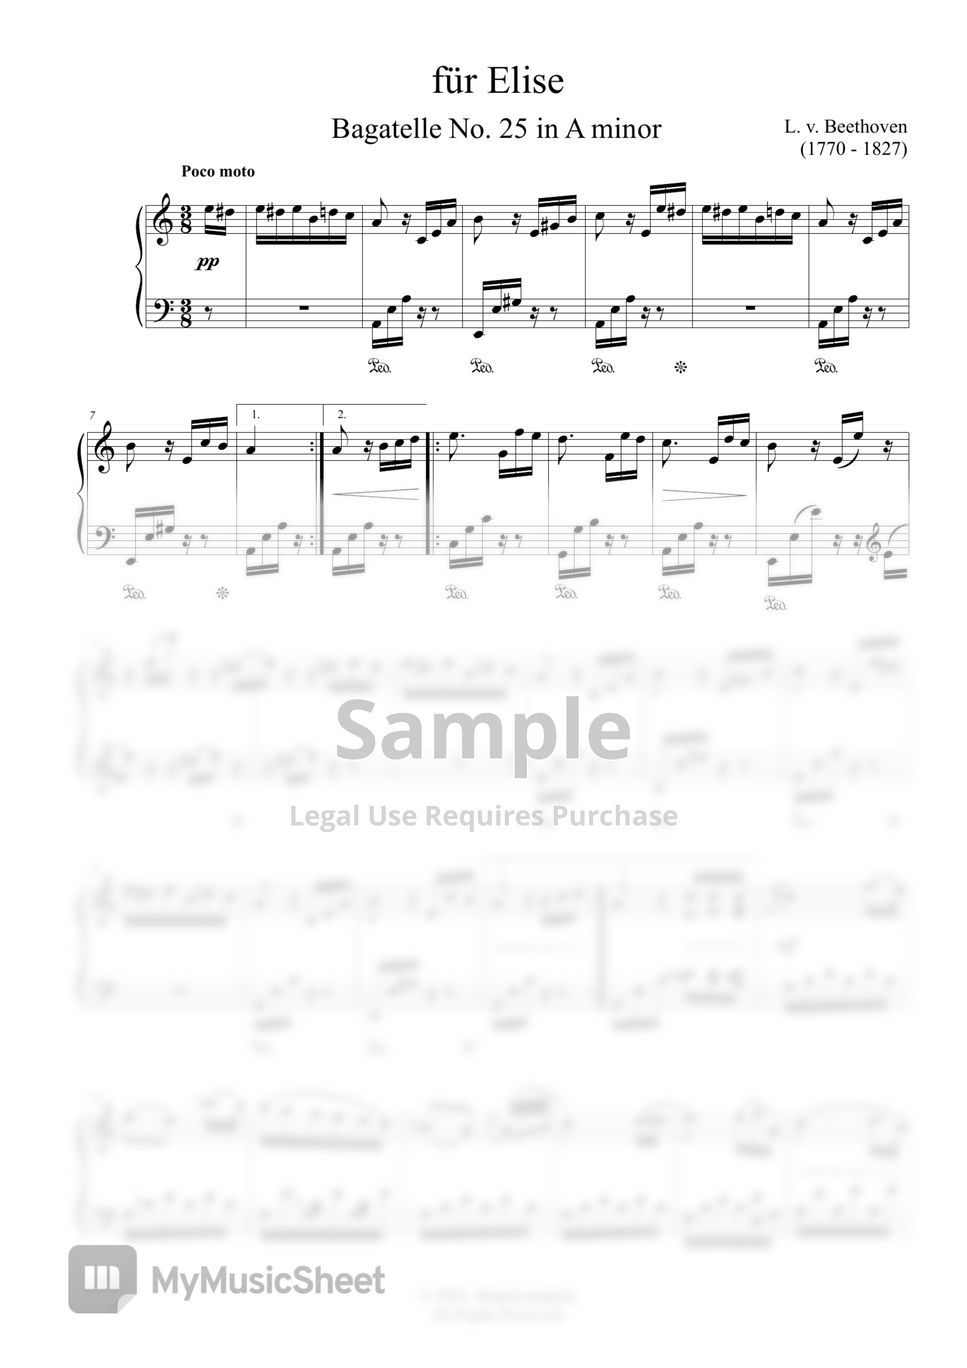 L. V. Beethoven - Für Elise (Bagatelle No. 25 in A minor)